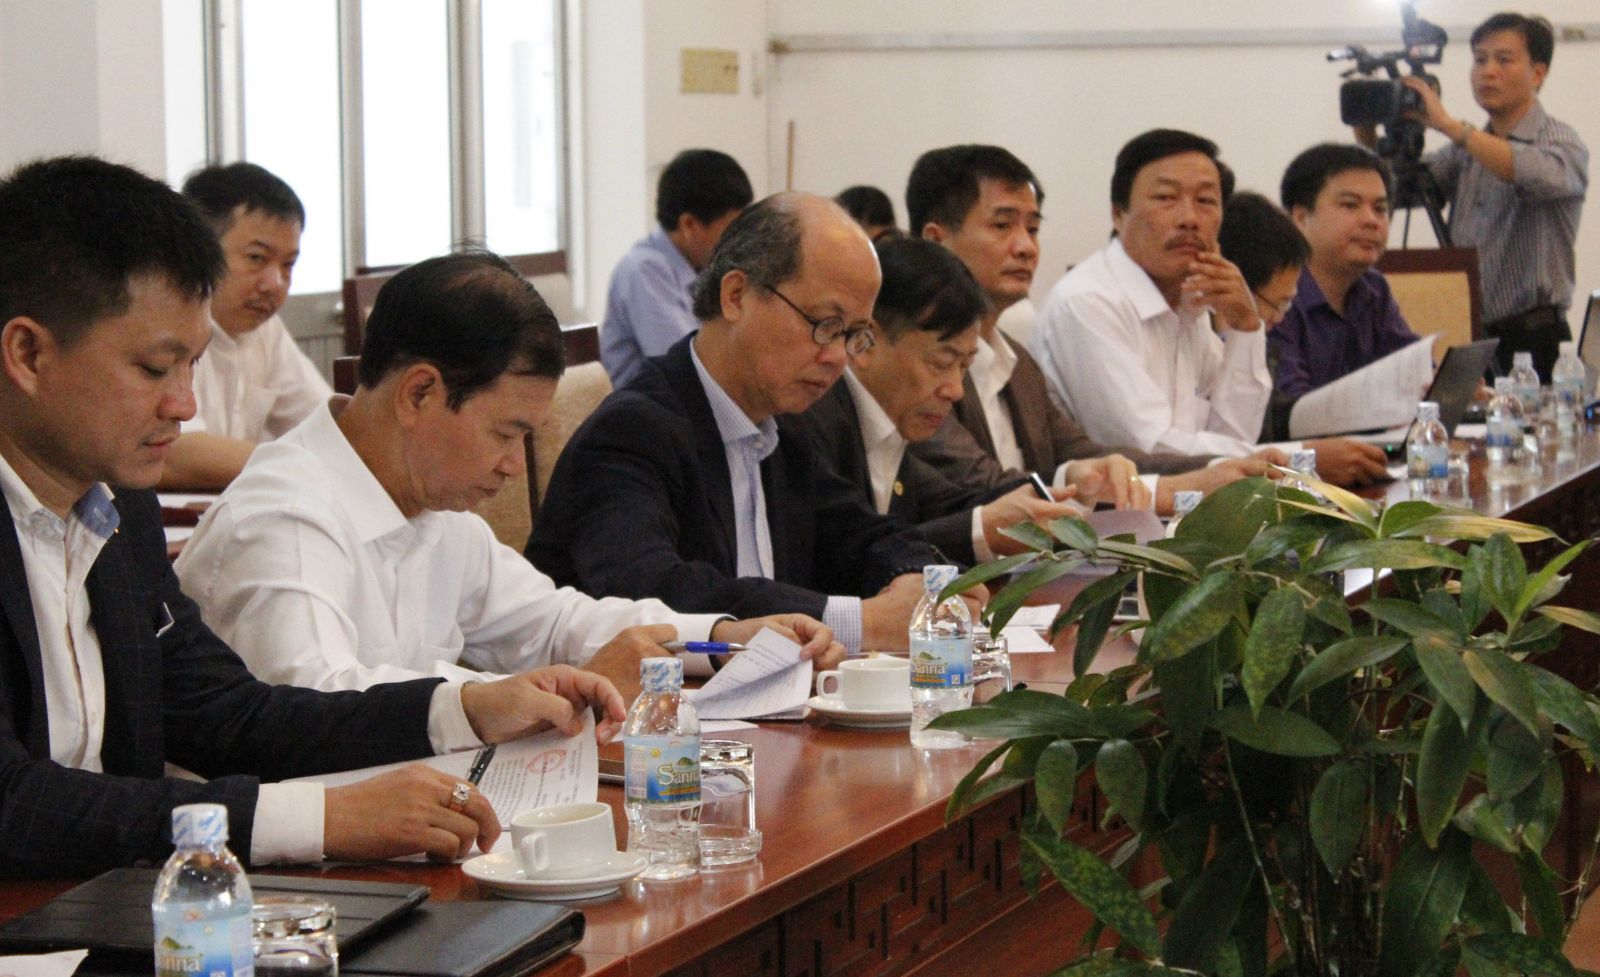 Việc hình thành hệ thống dữ liệu thị trường BĐS theo ông Nam cần có sự kết hợp giữa các bên và cần xác định, đây là nhiệm vụ đột xuất Thủ tướng giao cho Hiệp hội BĐS Việt Nam và các tỉnh, ban ngành liên quan.